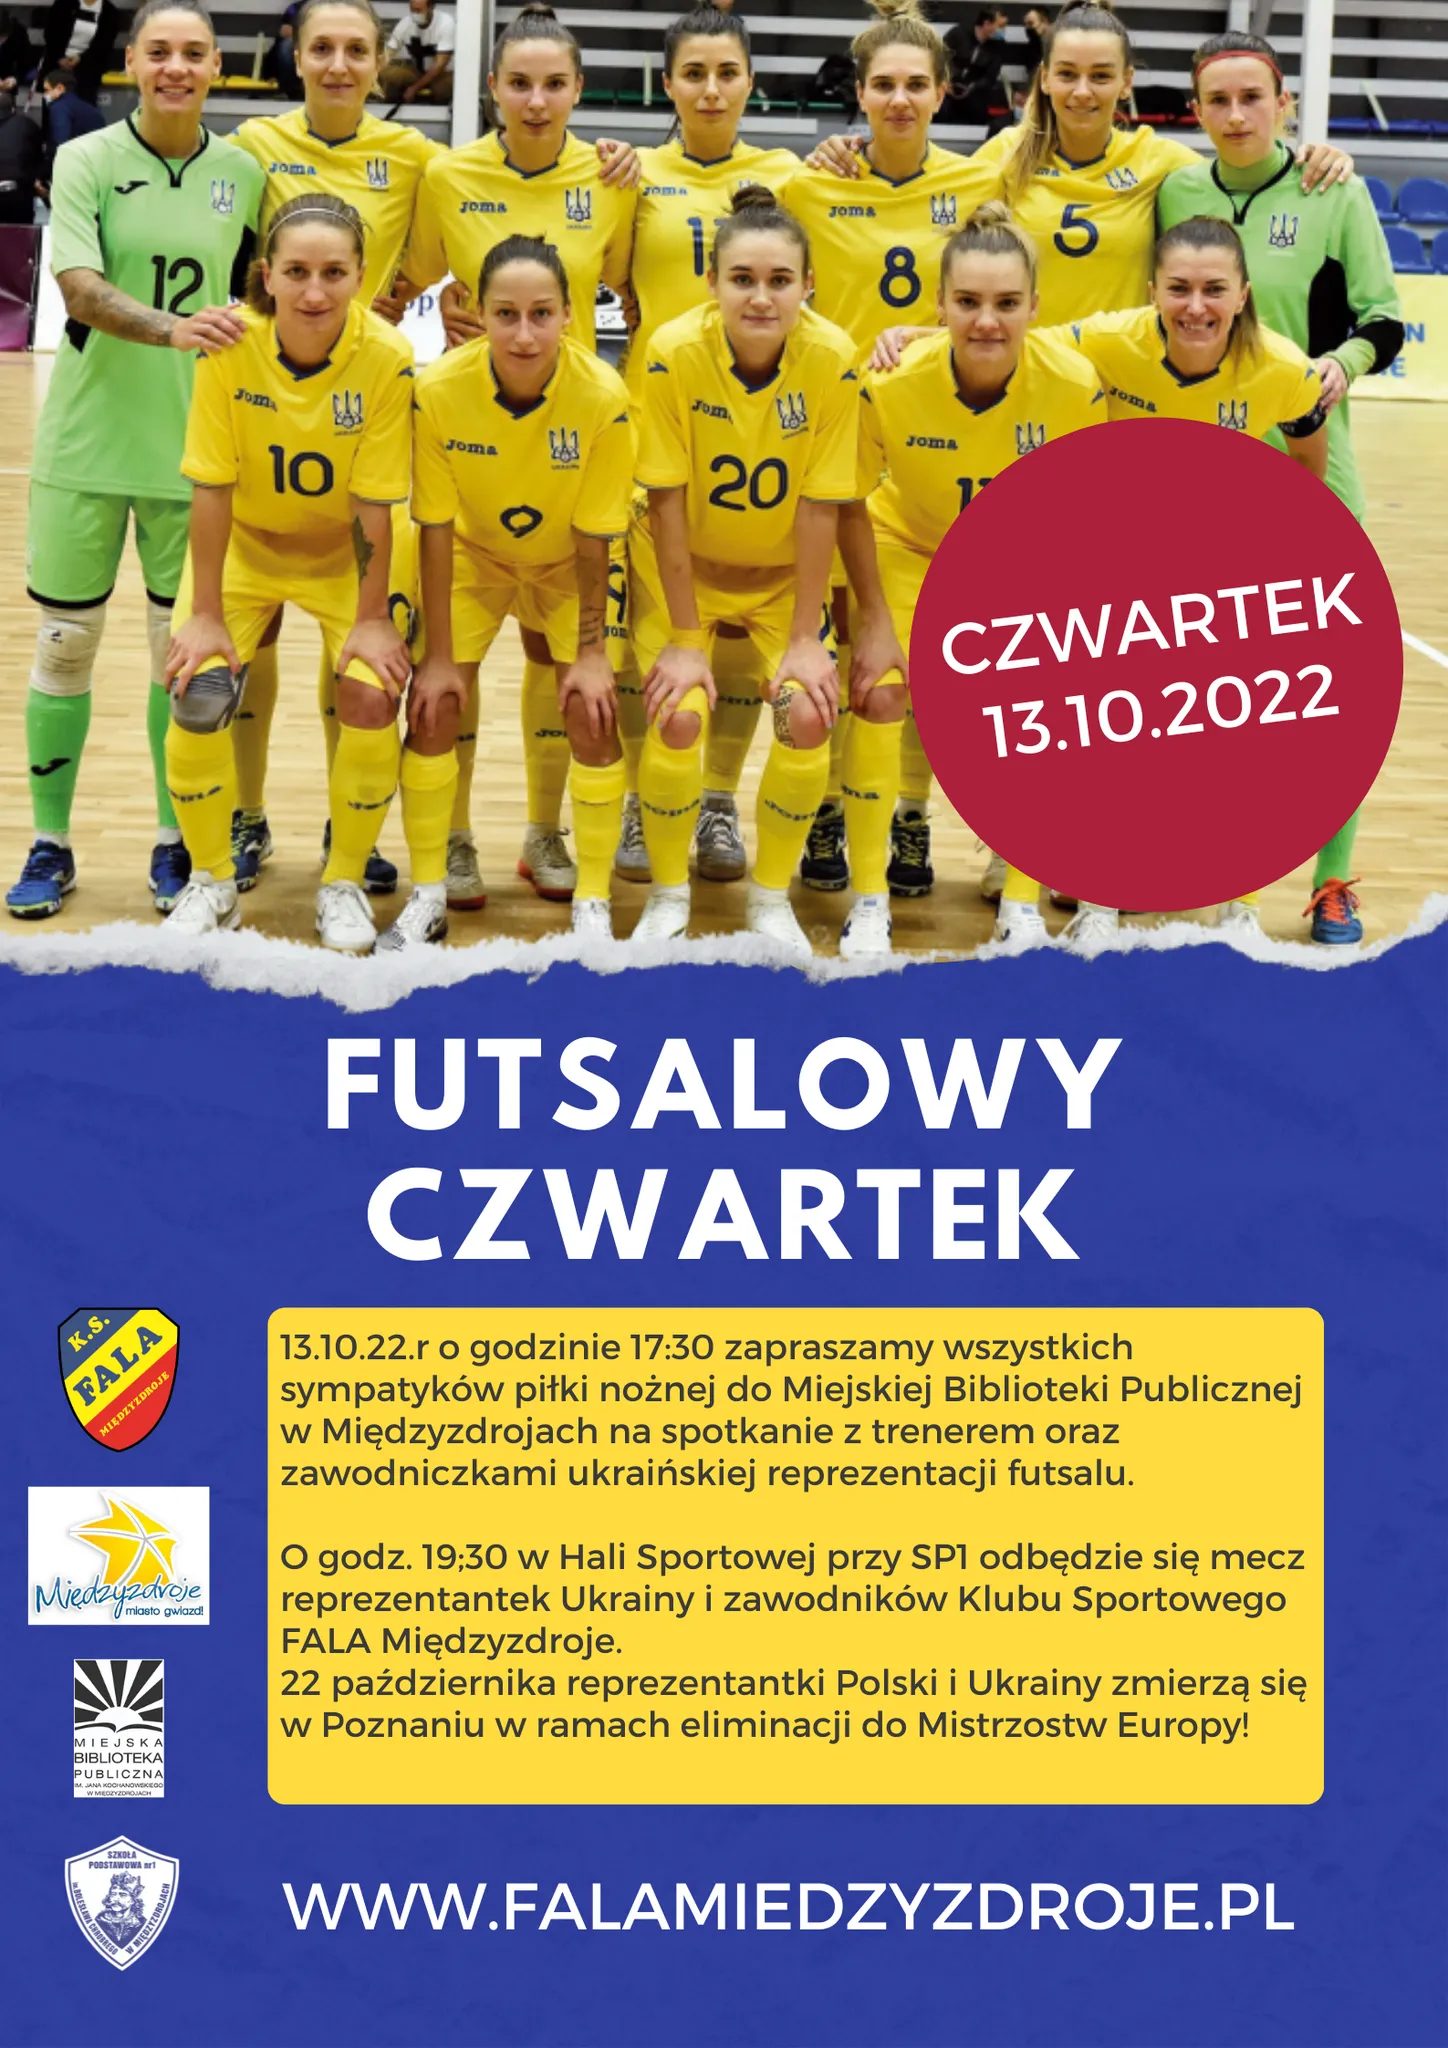 Futsalowy czwartek 13 października 2022 r.  